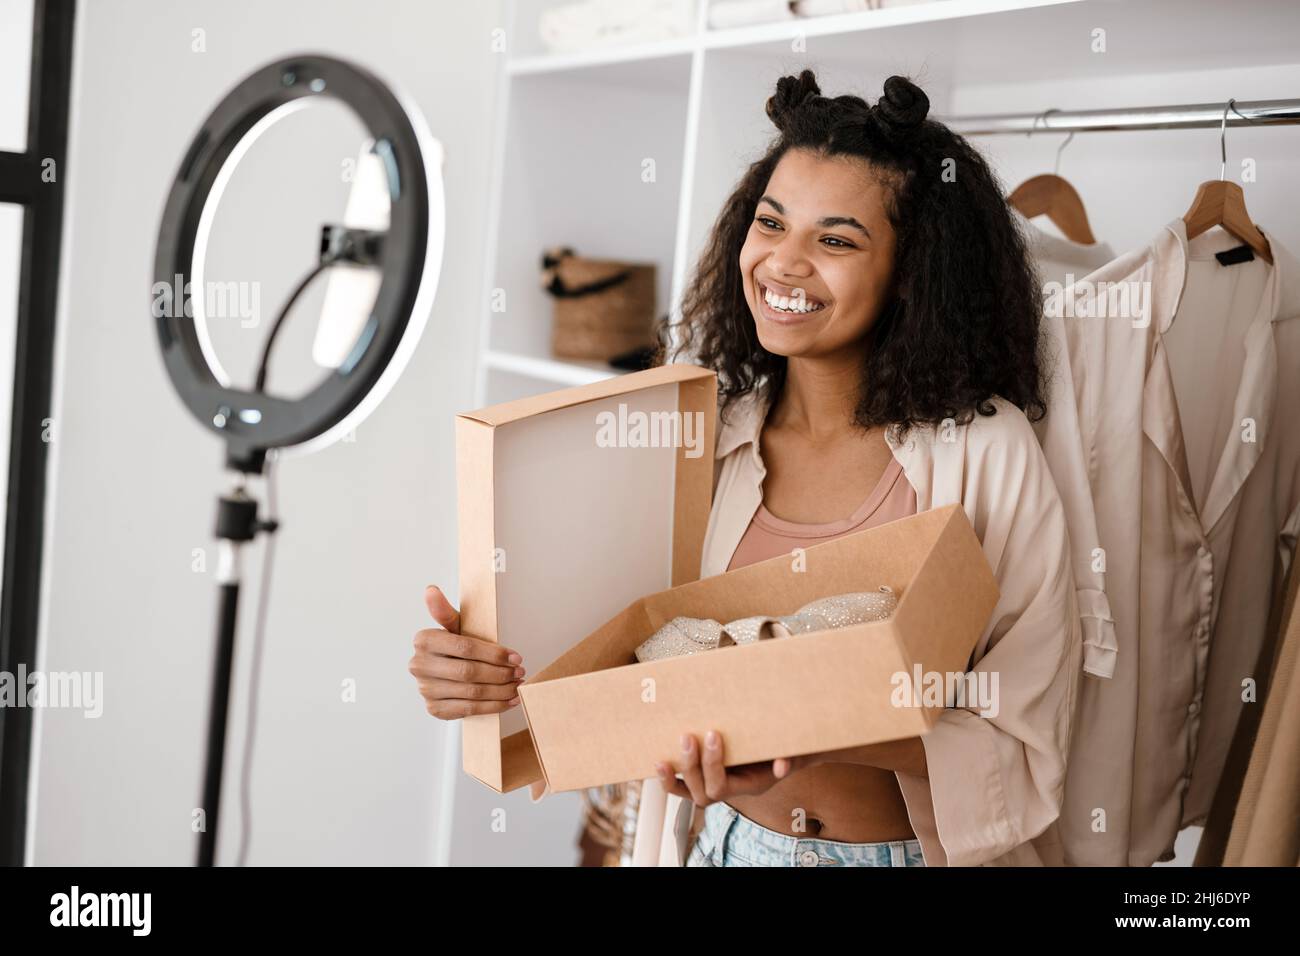 Glückliche junge afrikanische Frau Influencer Auspacken Paket mit Schuhen  stehen vor einer Kamera zu Hause Stockfotografie - Alamy